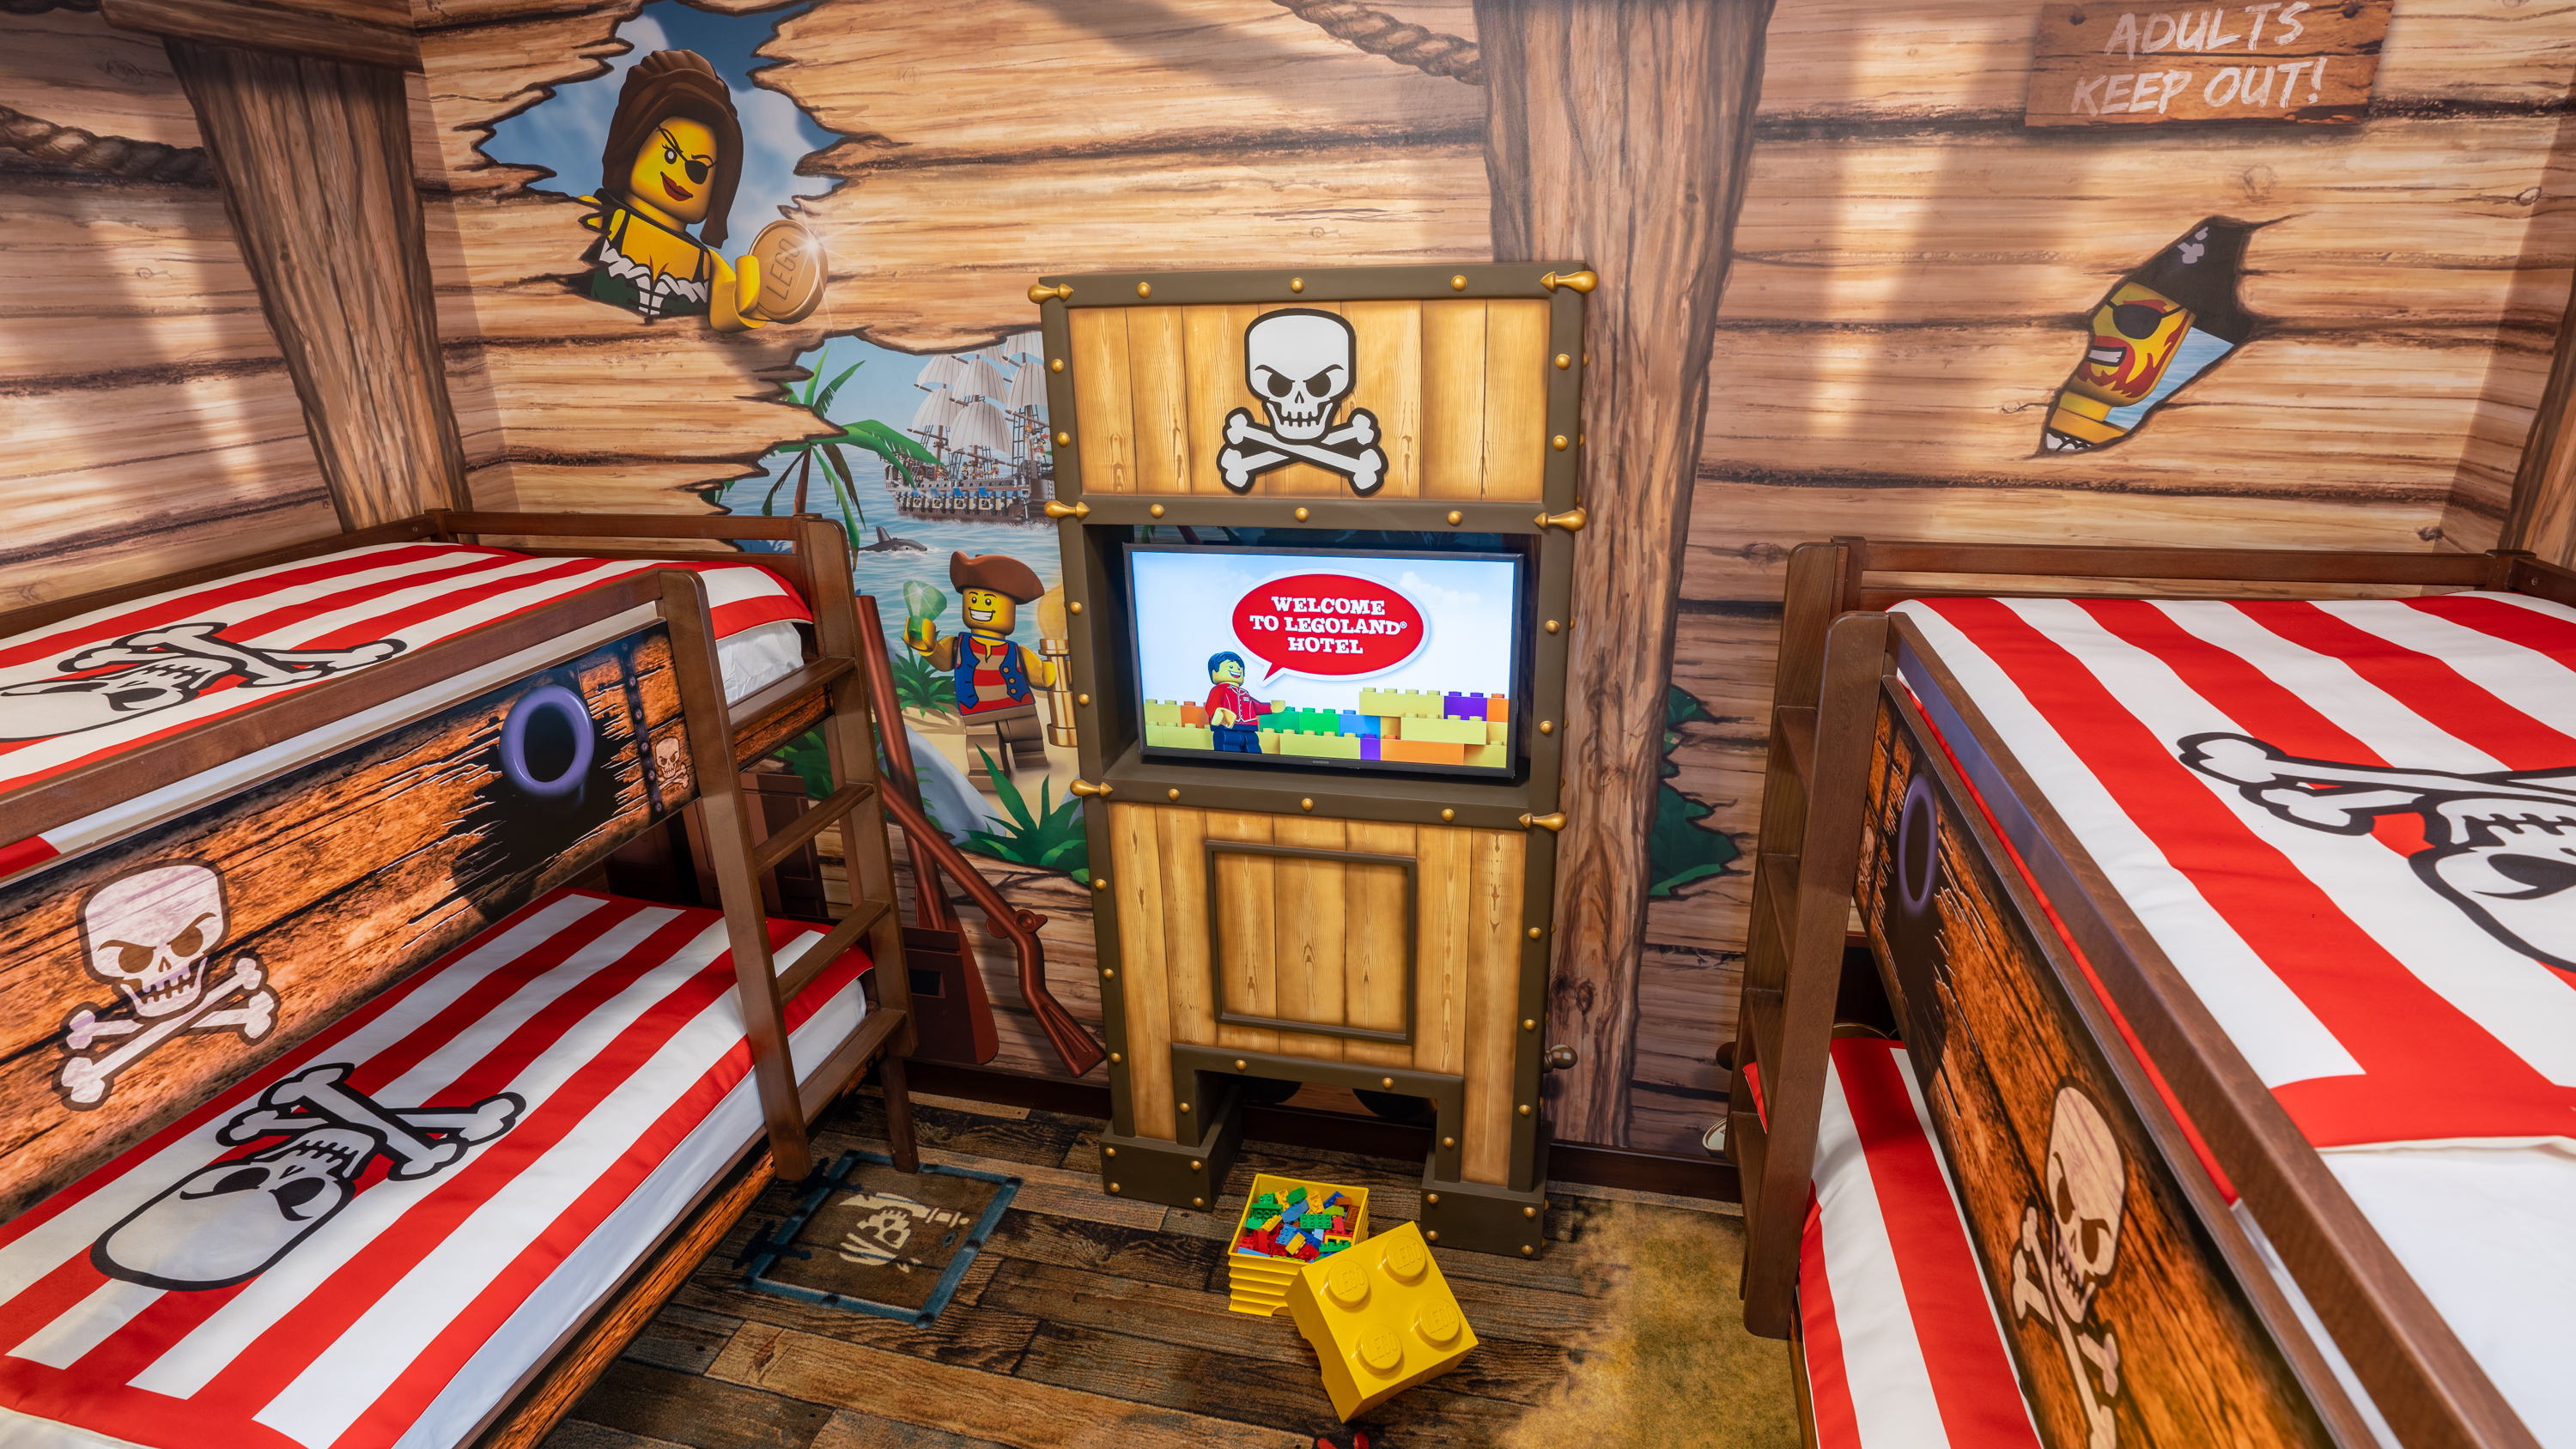 Legoland Hotel Room Interior Pirates 6